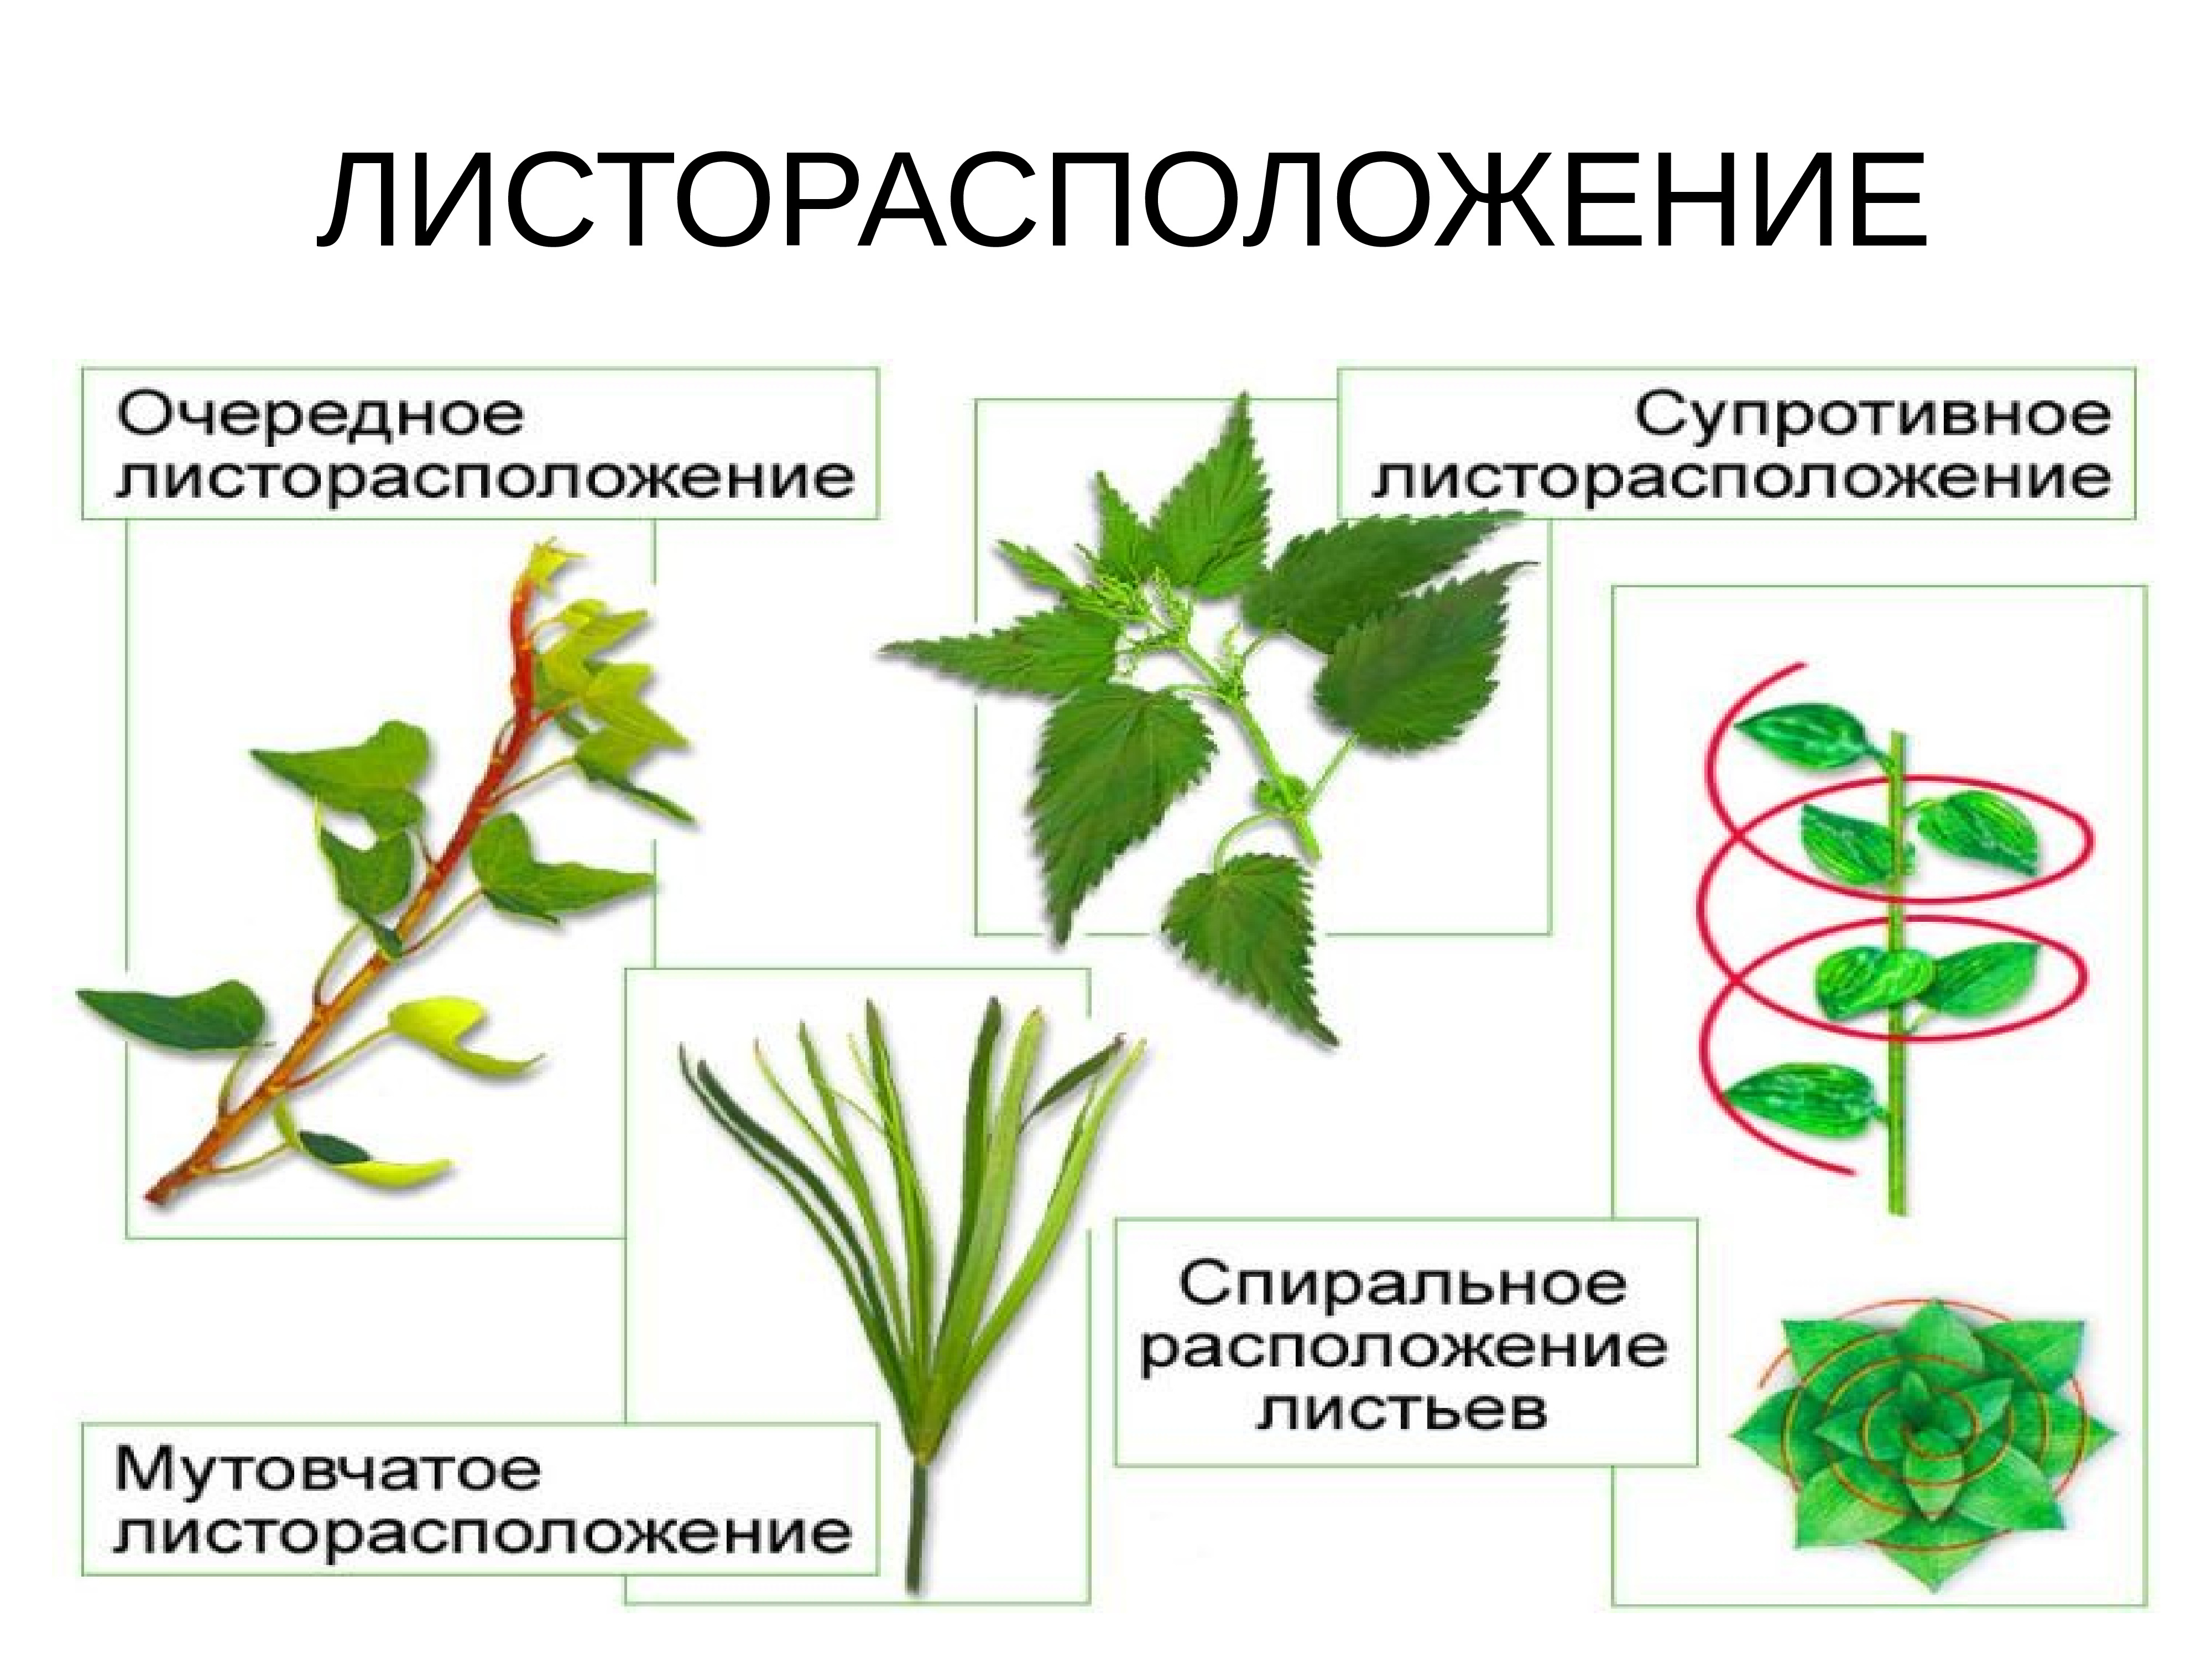 Местоположения растений. Очередное супротивное мутовчатое листорасположение. Каланхоэ листорасположение. Лист каштана листорасположение.